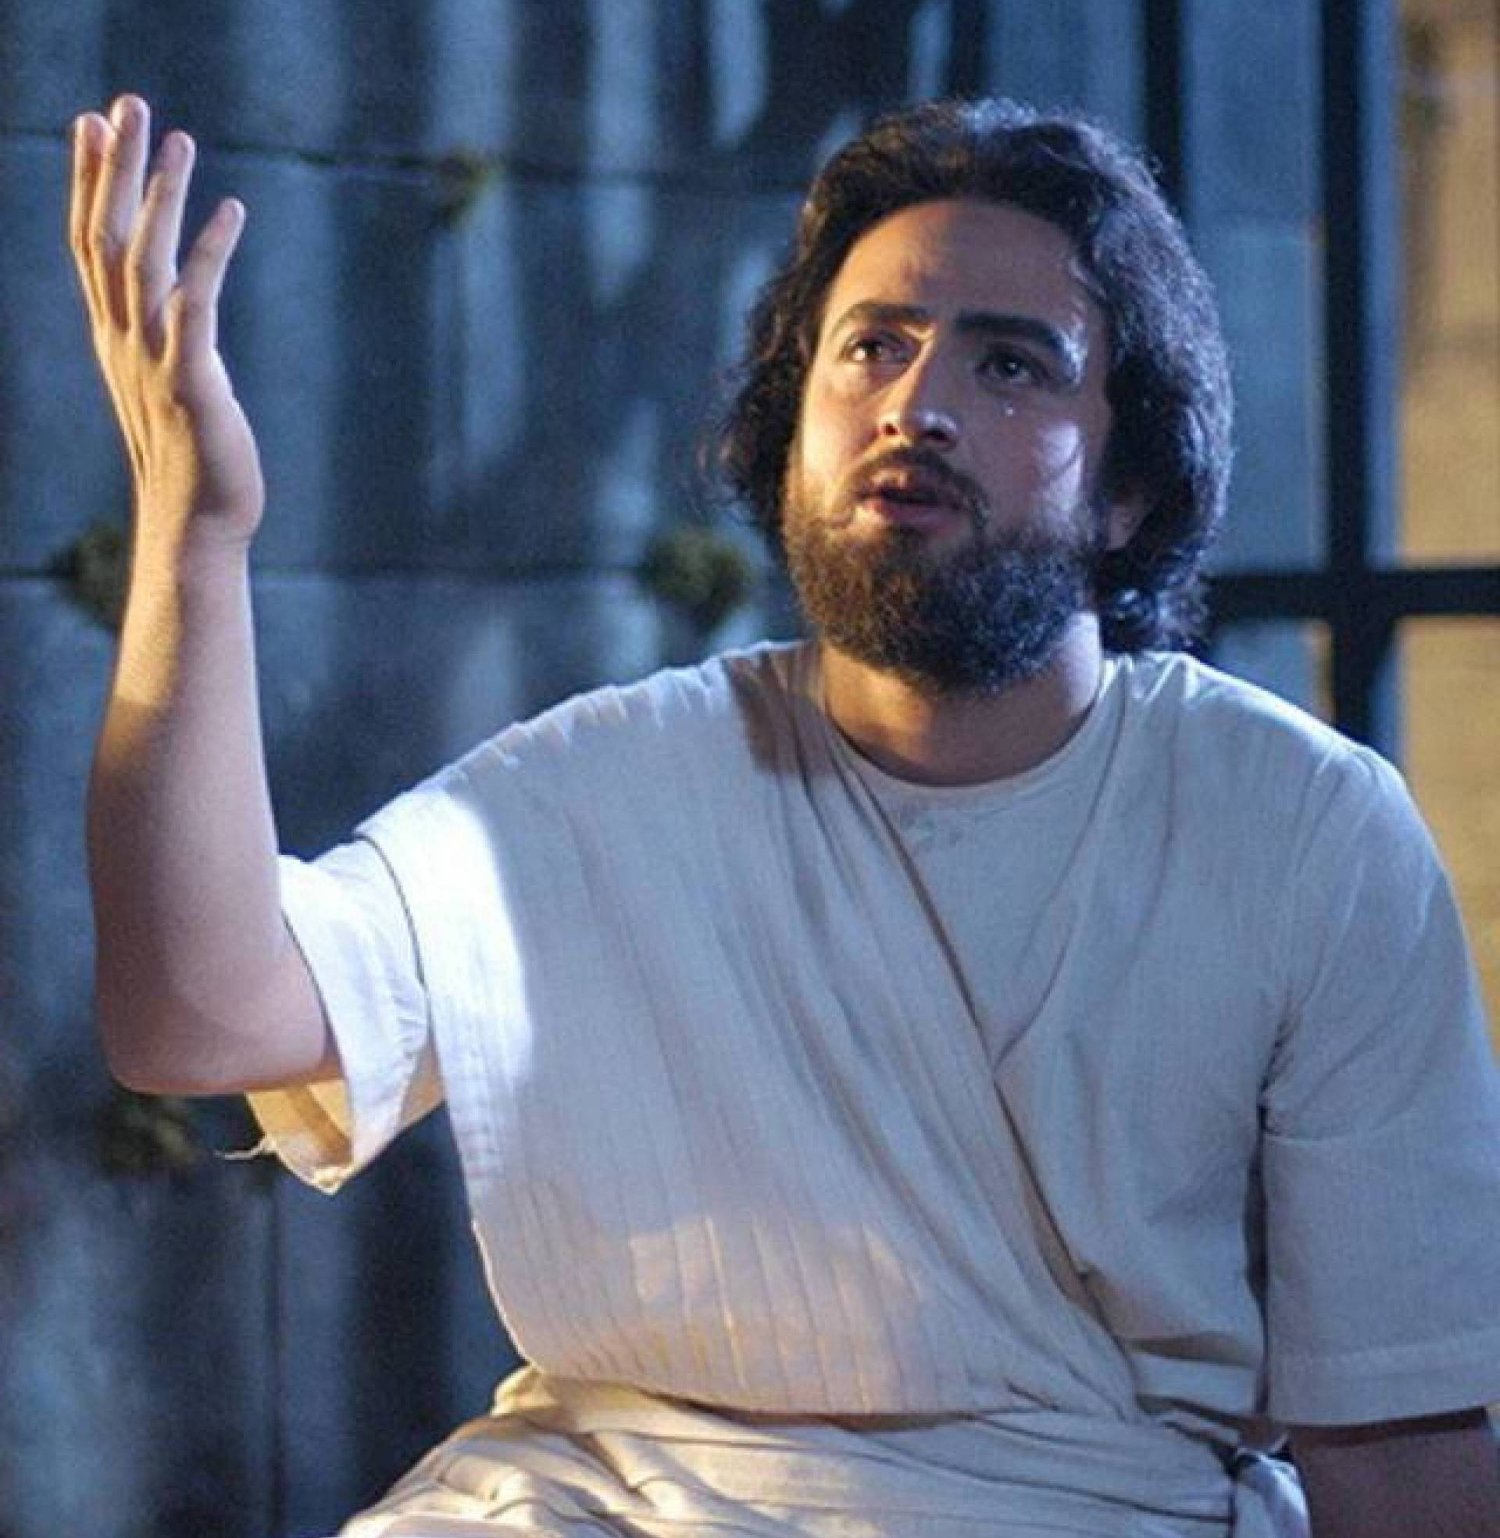 الممثل الإيراني مصطفى زماني الذي جسّد شخصية النبي يوسف في مسلسل «يوسف الصدّيق»